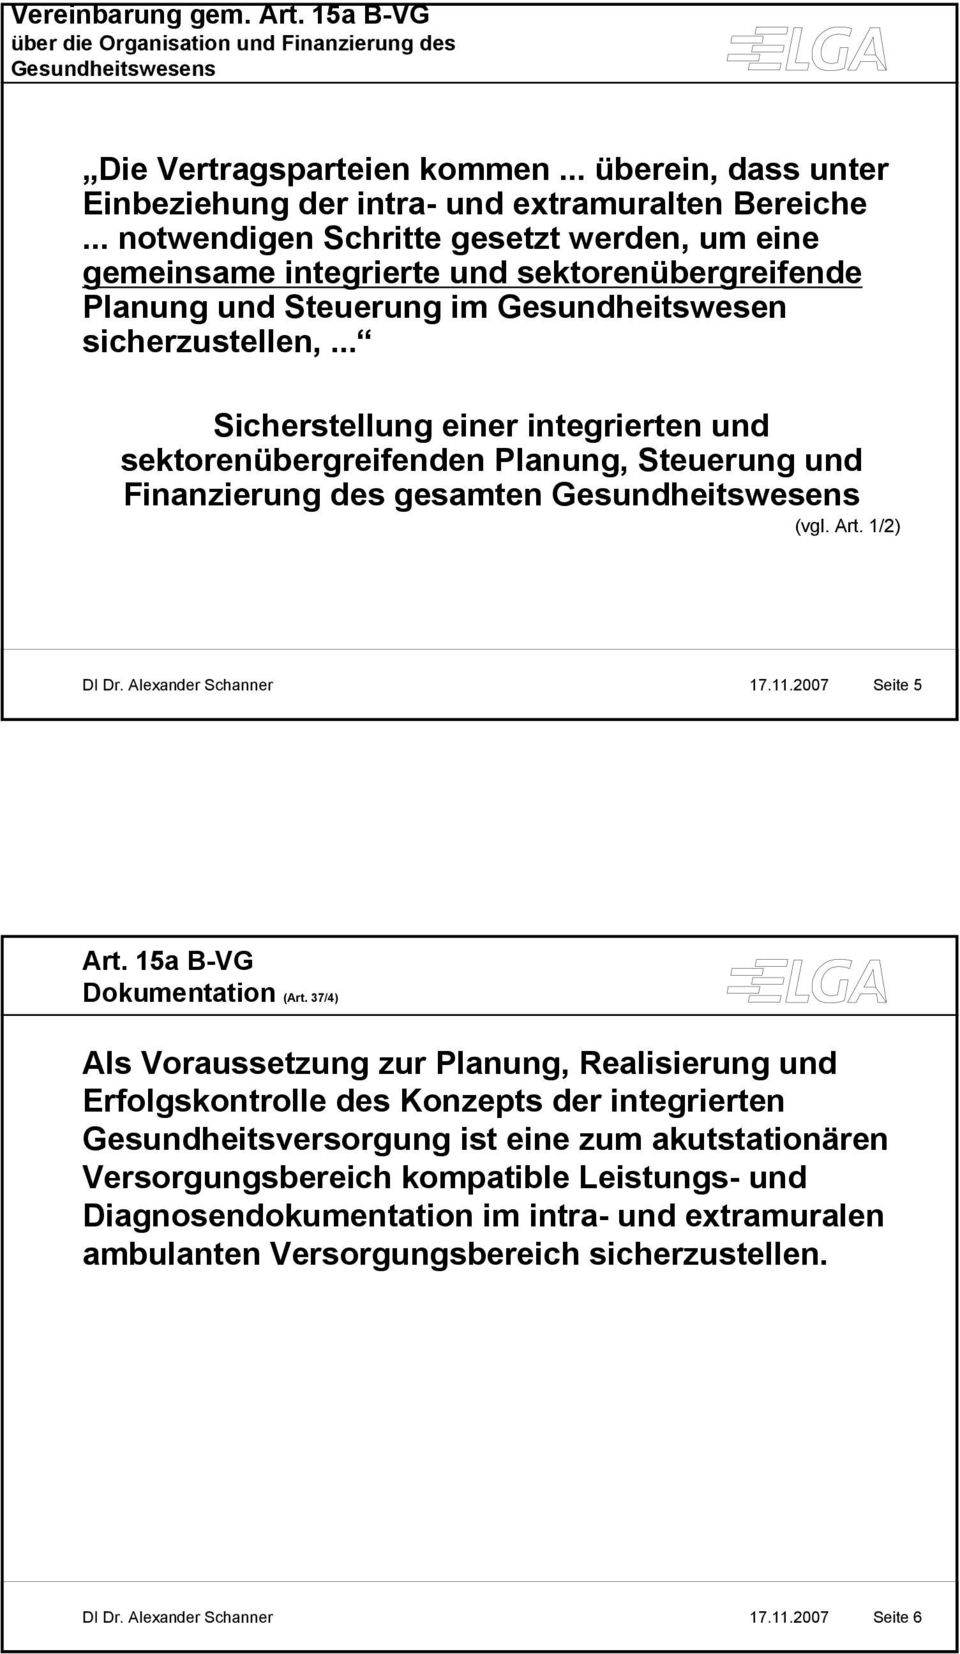 .. Sicherstellung einer integrierten und sektorenübergreifenden Planung, Steuerung und Finanzierung des gesamten Gesundheitswesens (vgl. Art. 1/2) DI Dr. Alexander Schanner 17.11.2007 Seite 5 Art.